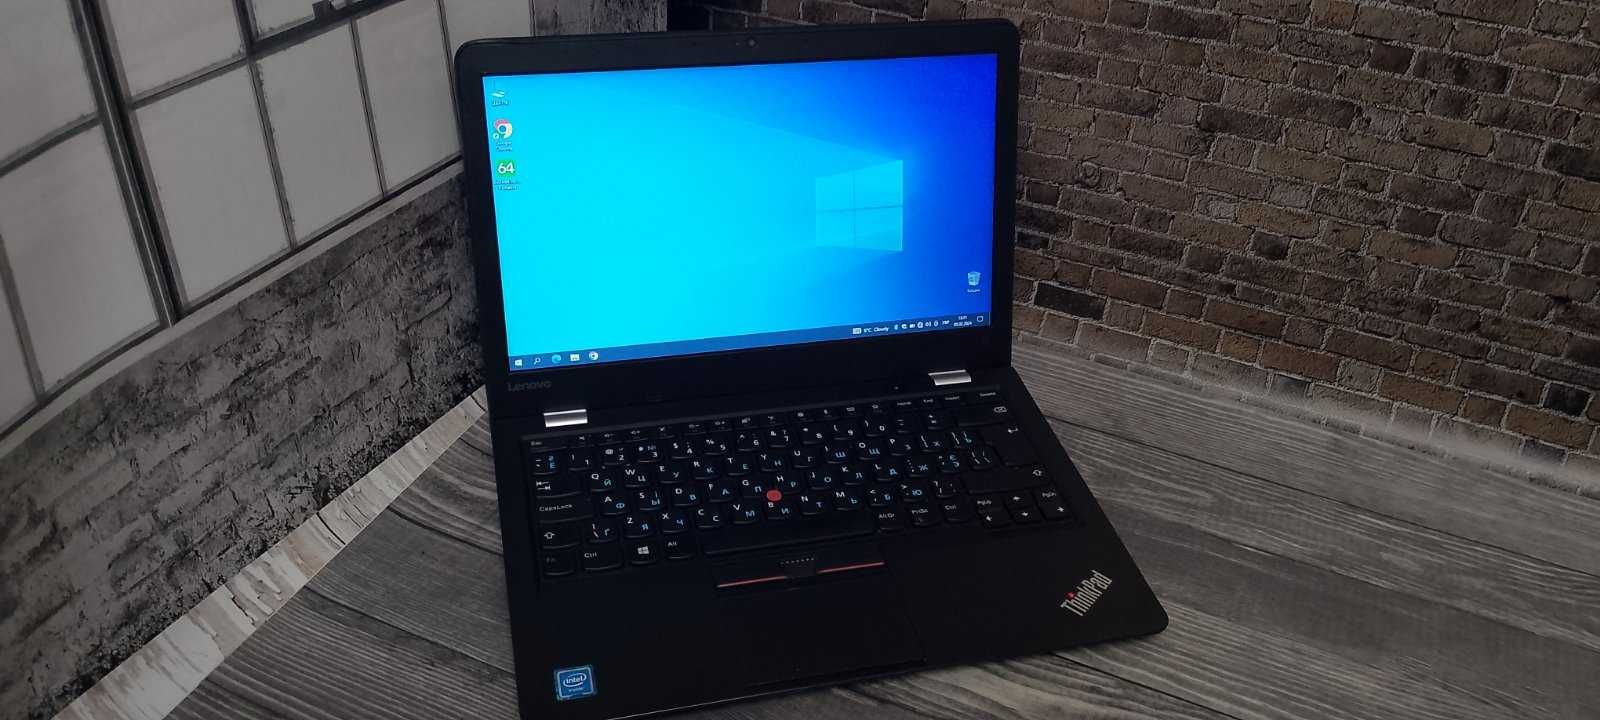 АКЦІЯ! Ноутбук Lenovo ThinkPad 13 (3865U/8/240SSD) + ГАРАНТІЯ